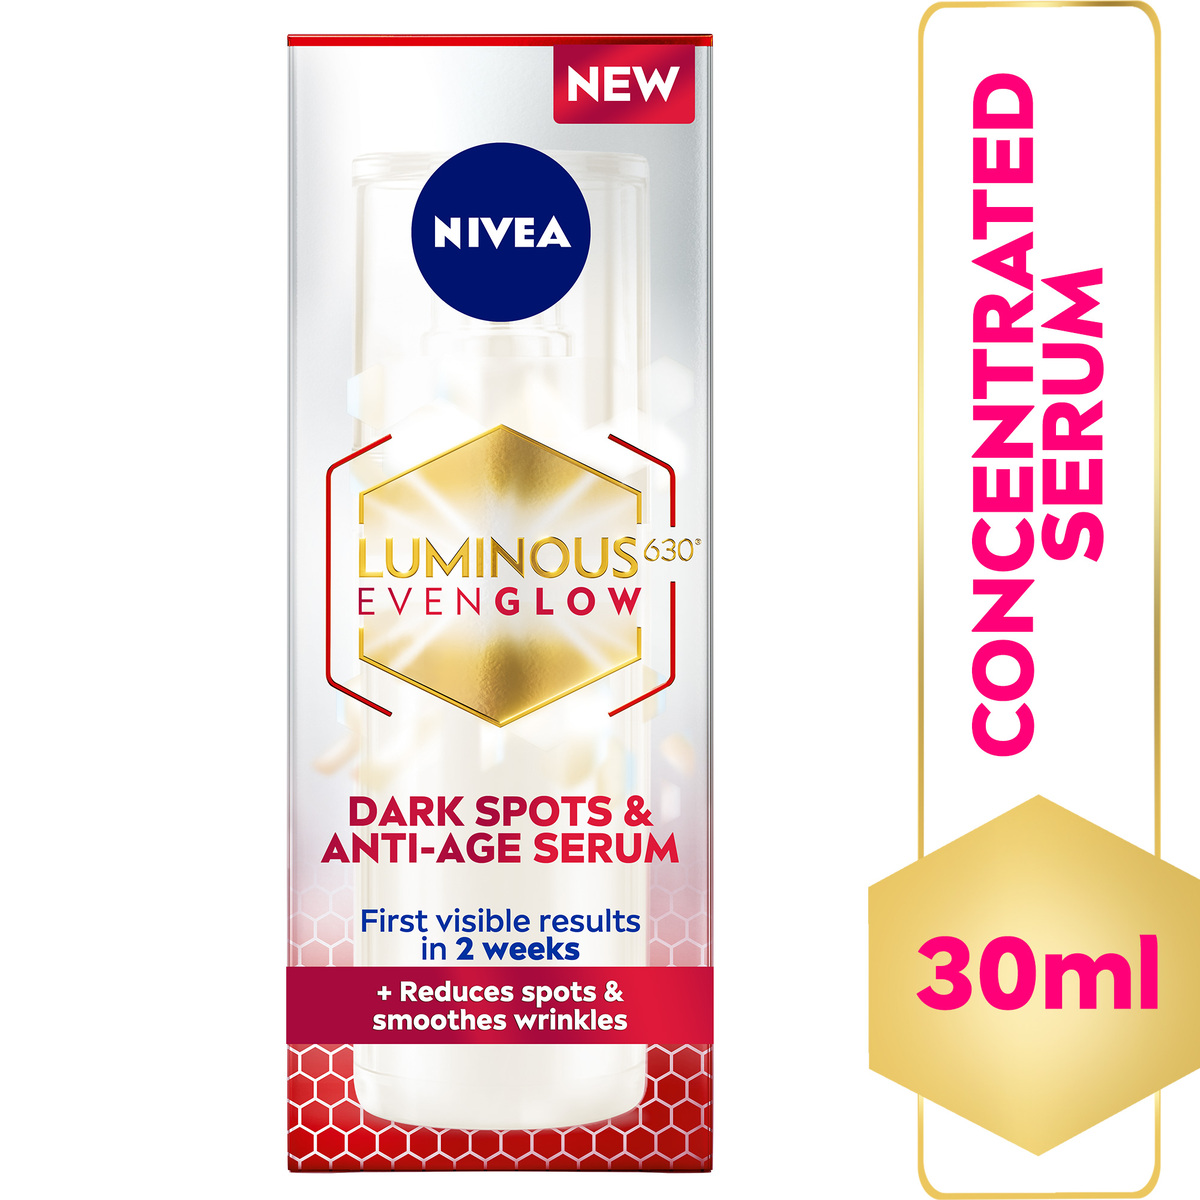 اشتري قم بشراء Nivea Luminous 630 Even Glow Dark Spots and Anti-Age Face Serum with Hyaluronic Acid and Squalene 30 ml Online at Best Price من الموقع - من لولو هايبر ماركت Anti Wrinkle في الامارات